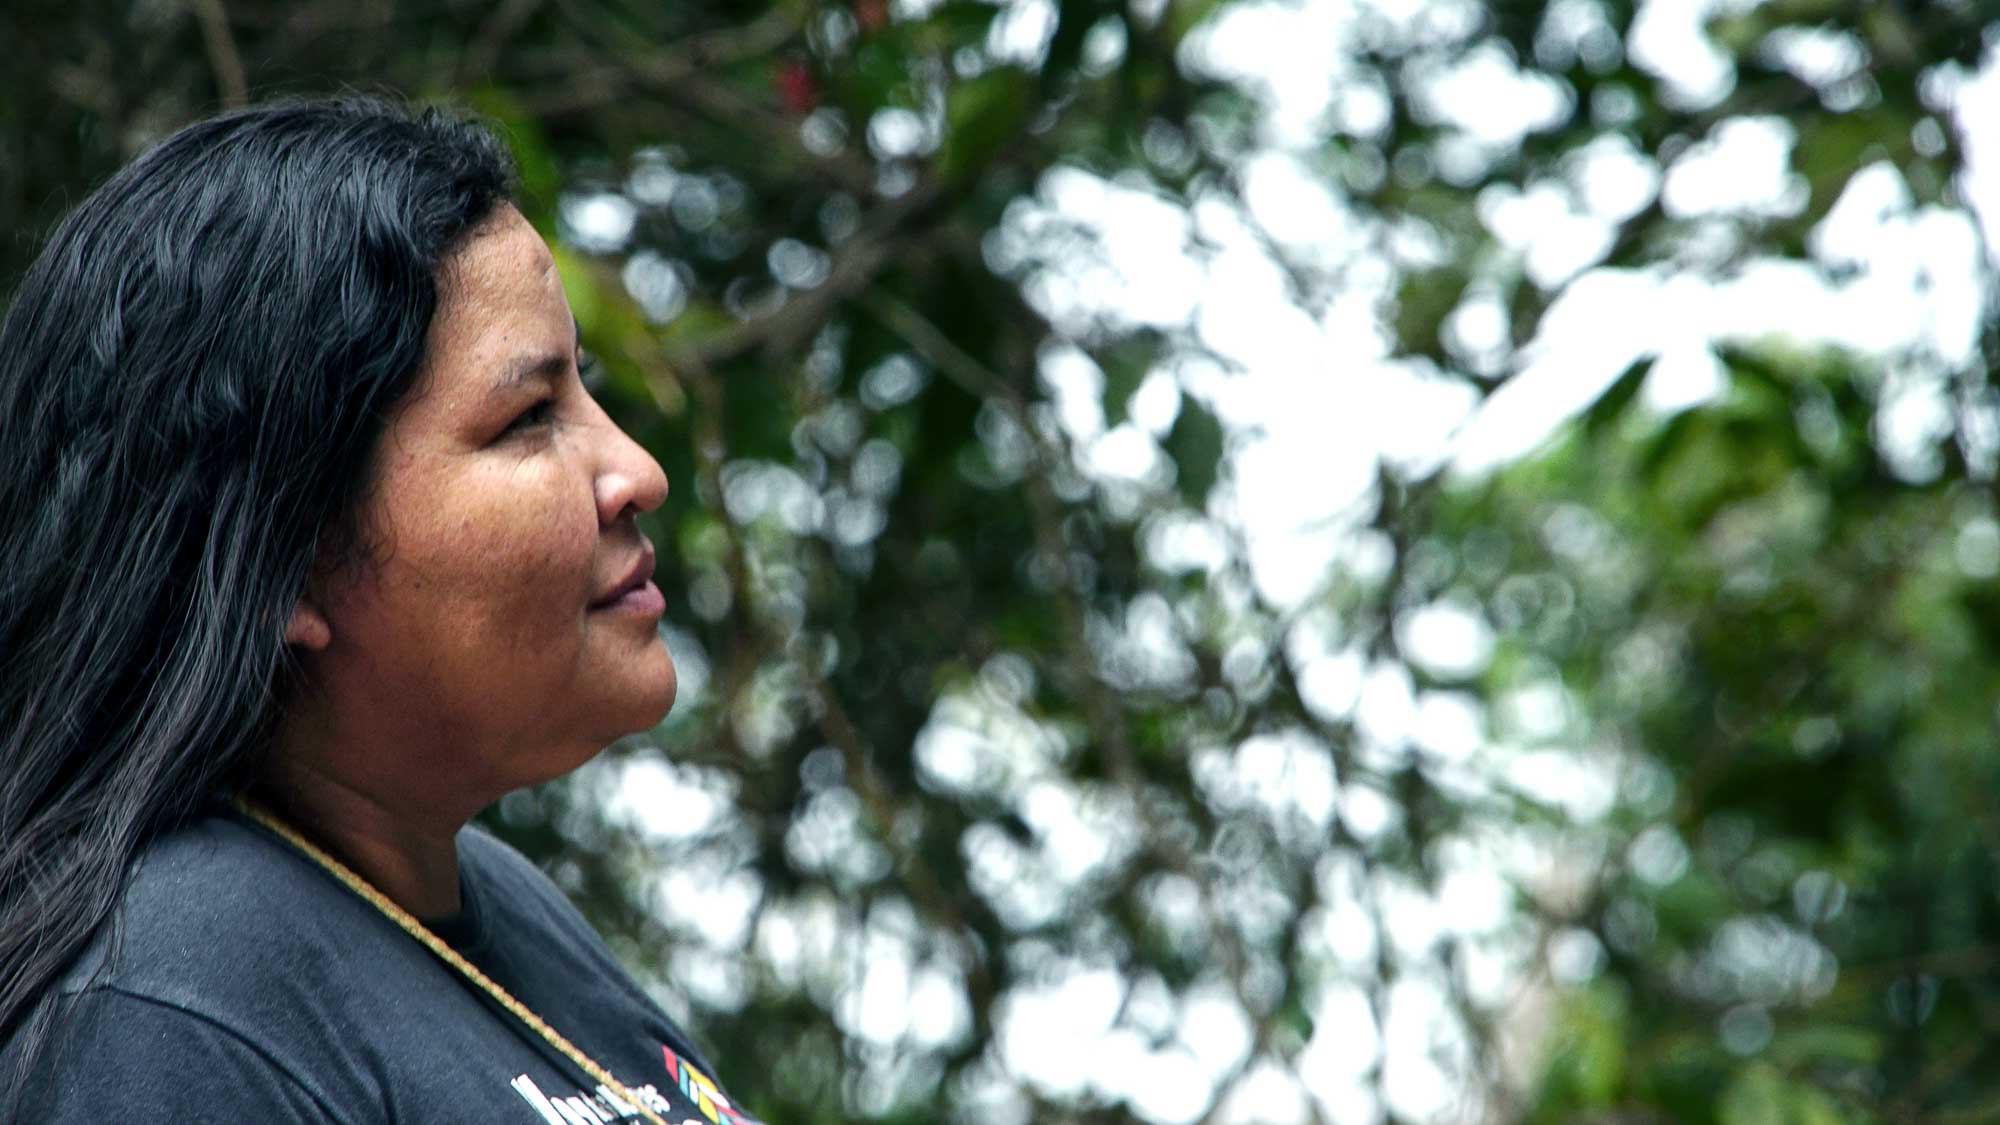 Mulheres indígenas se unem para ter voz e participação em Rondônia